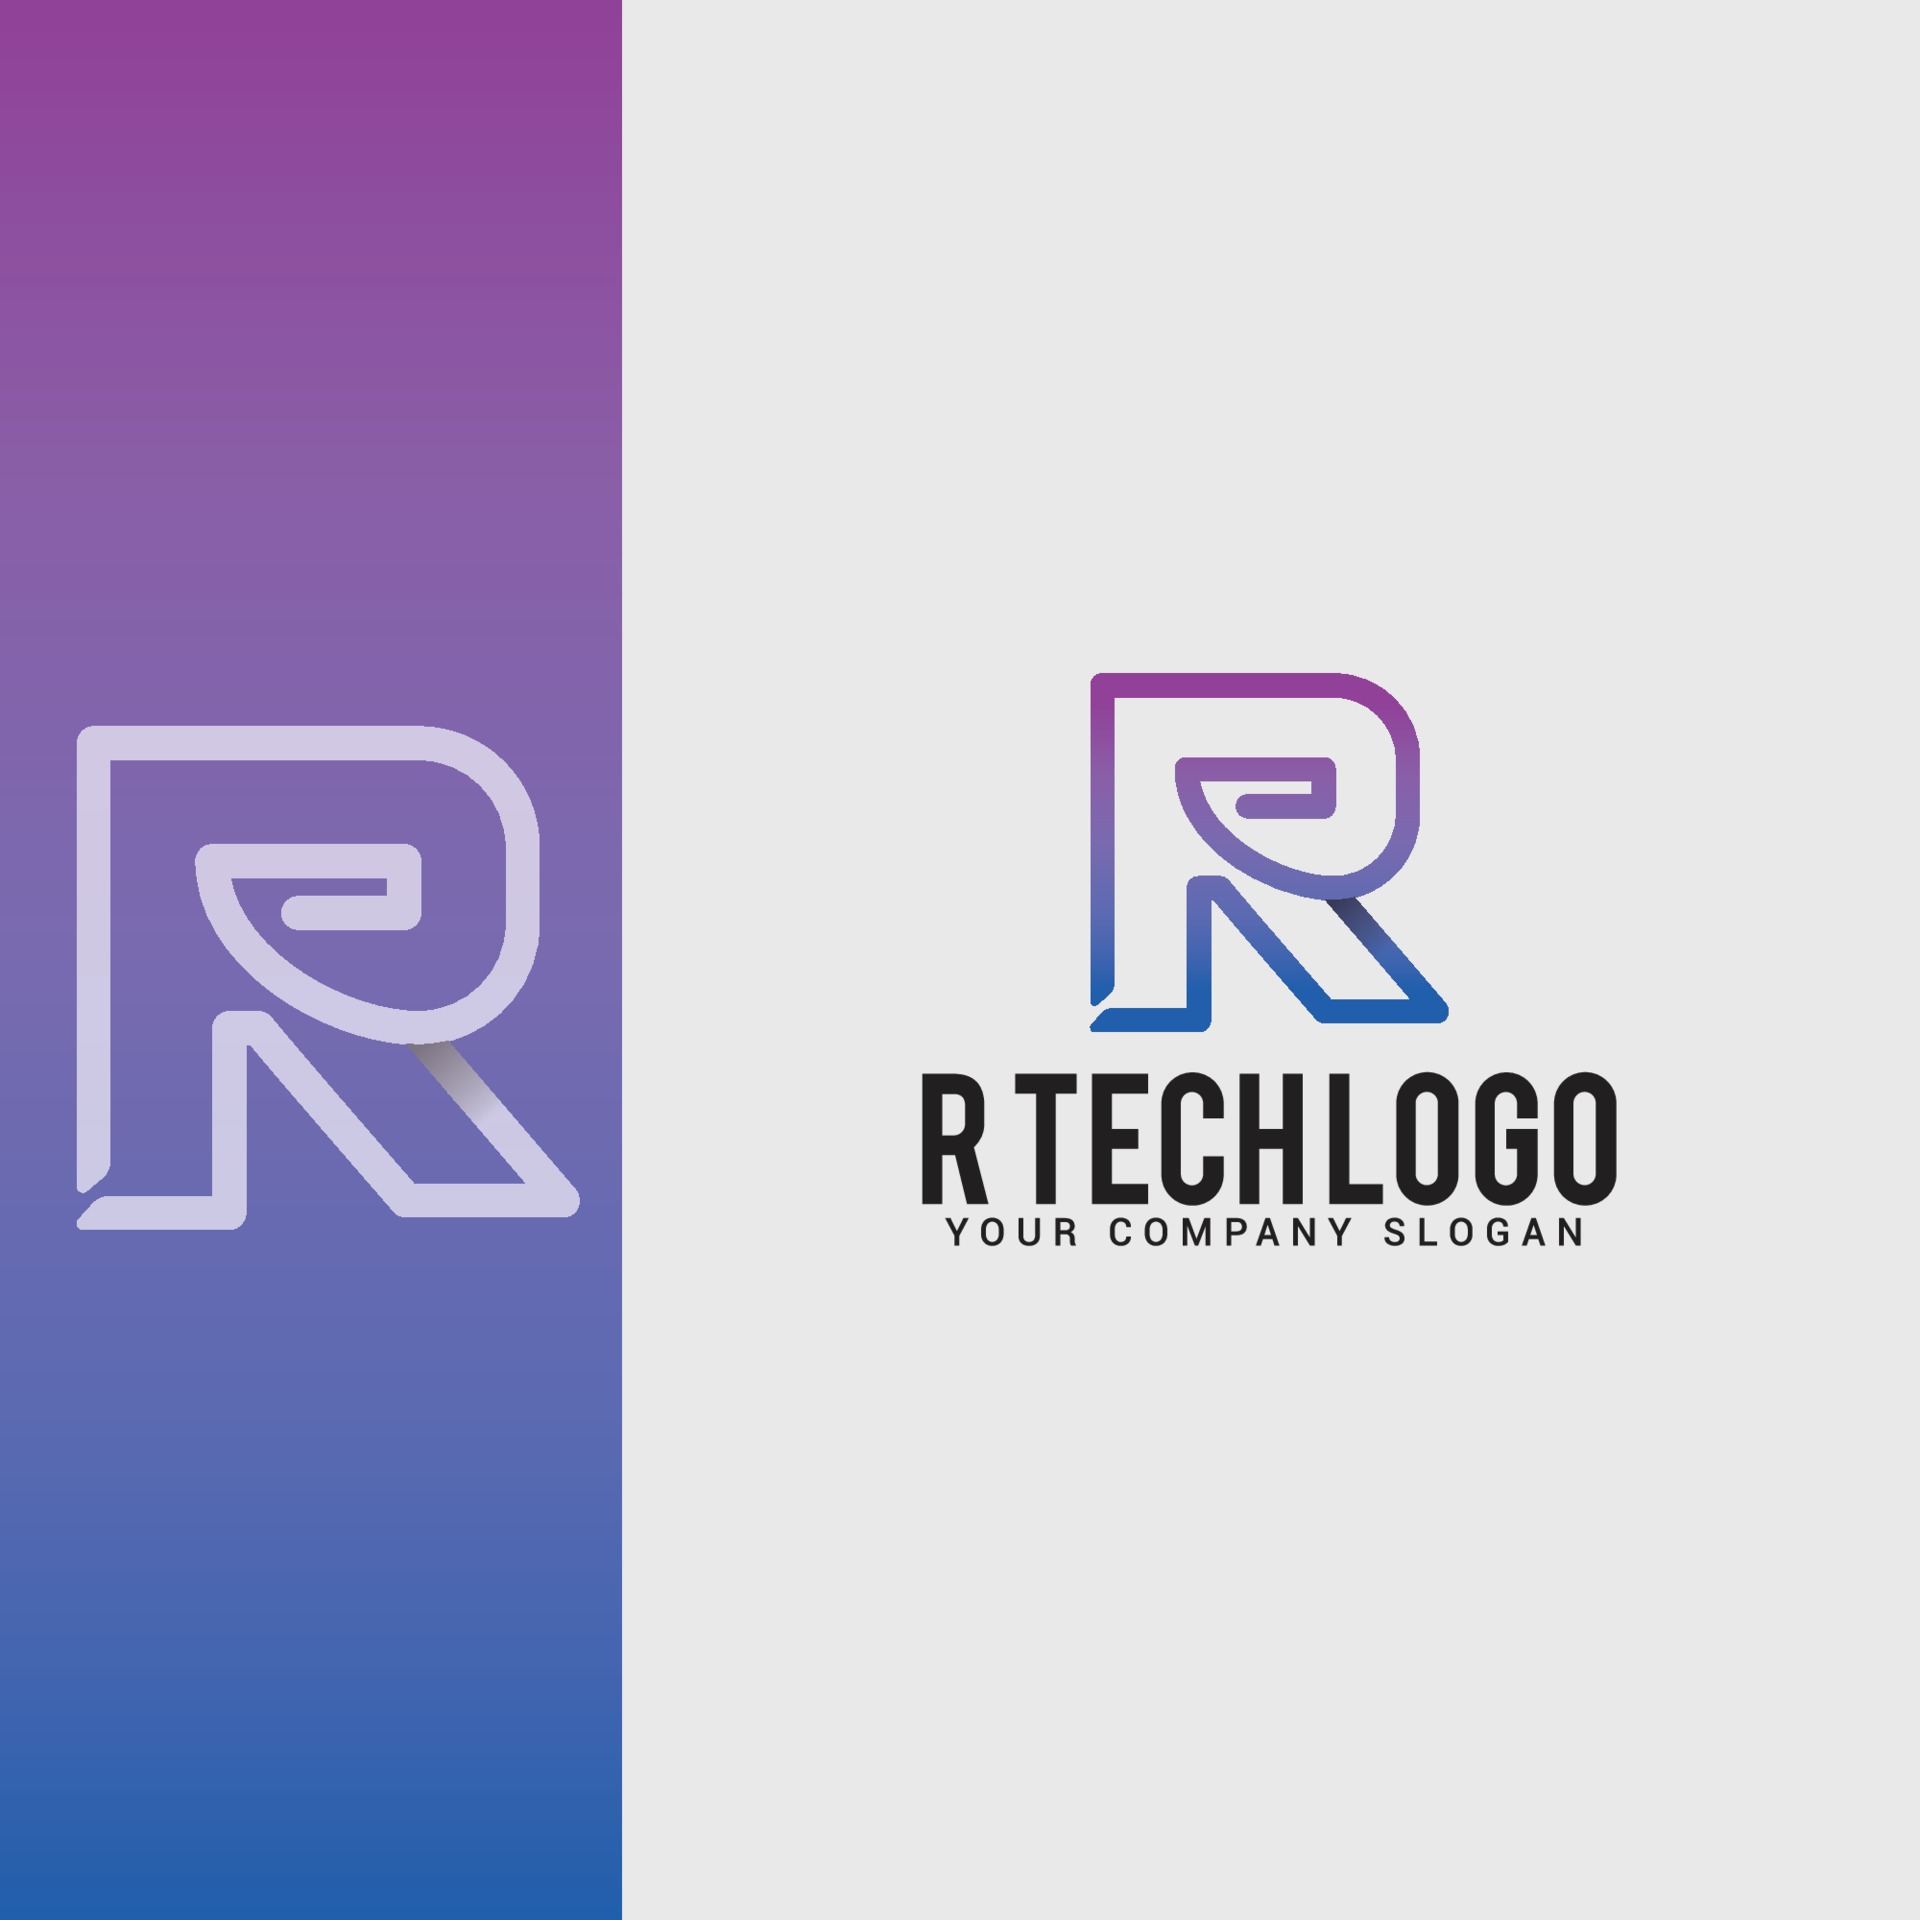 R-tech logo design vector template 2158993 Vector Art at Vecteezy